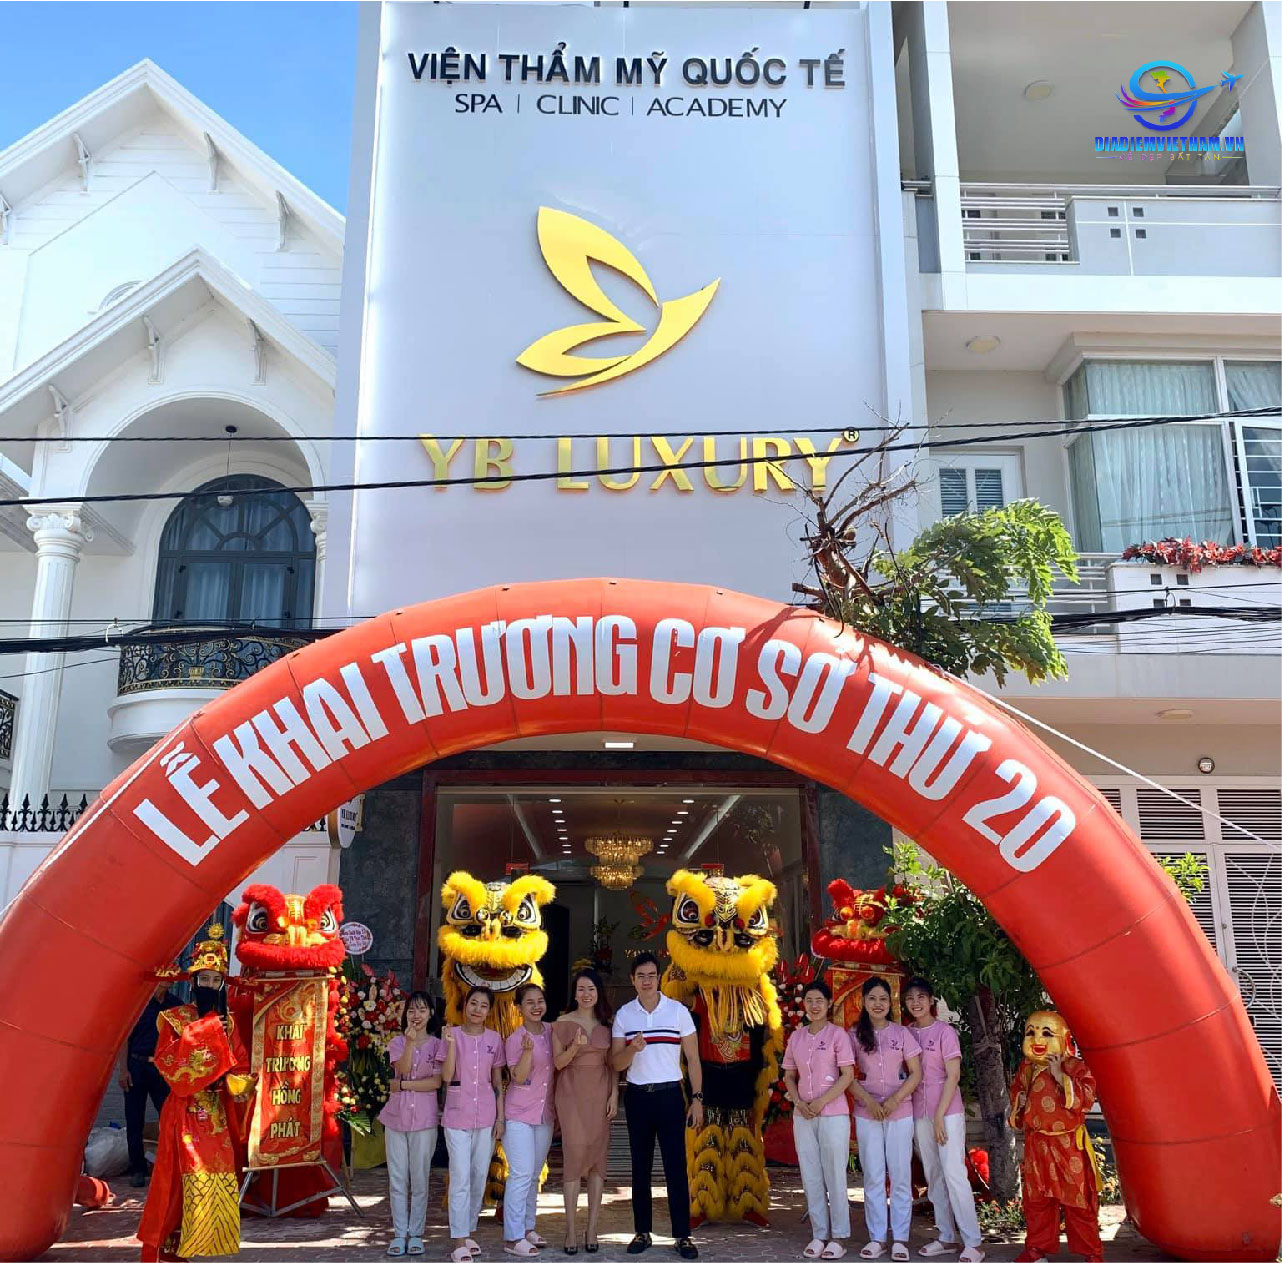 YB Spa Bình Thuận